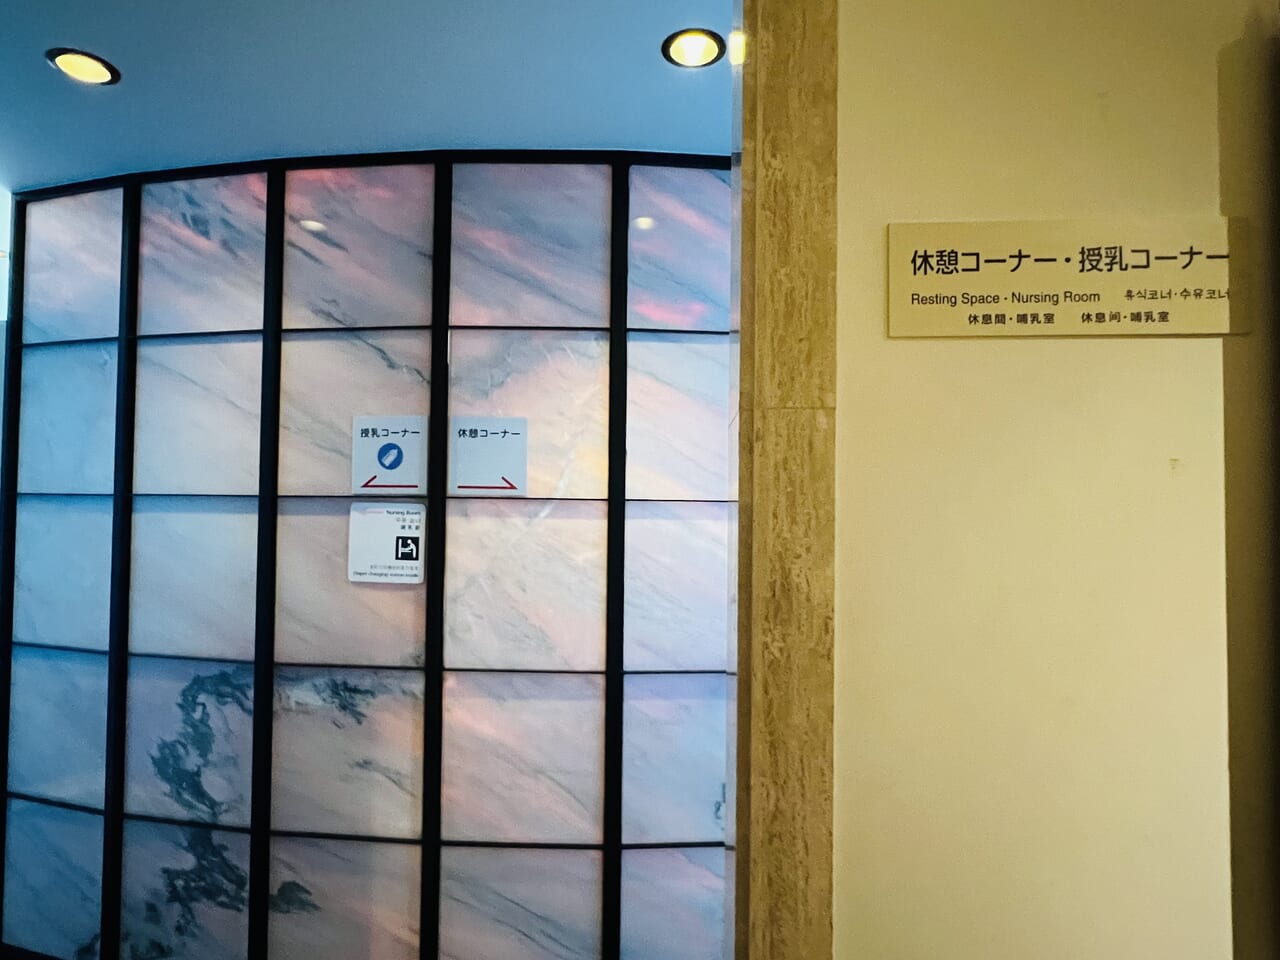 高知県立美術館の休憩所と授乳室